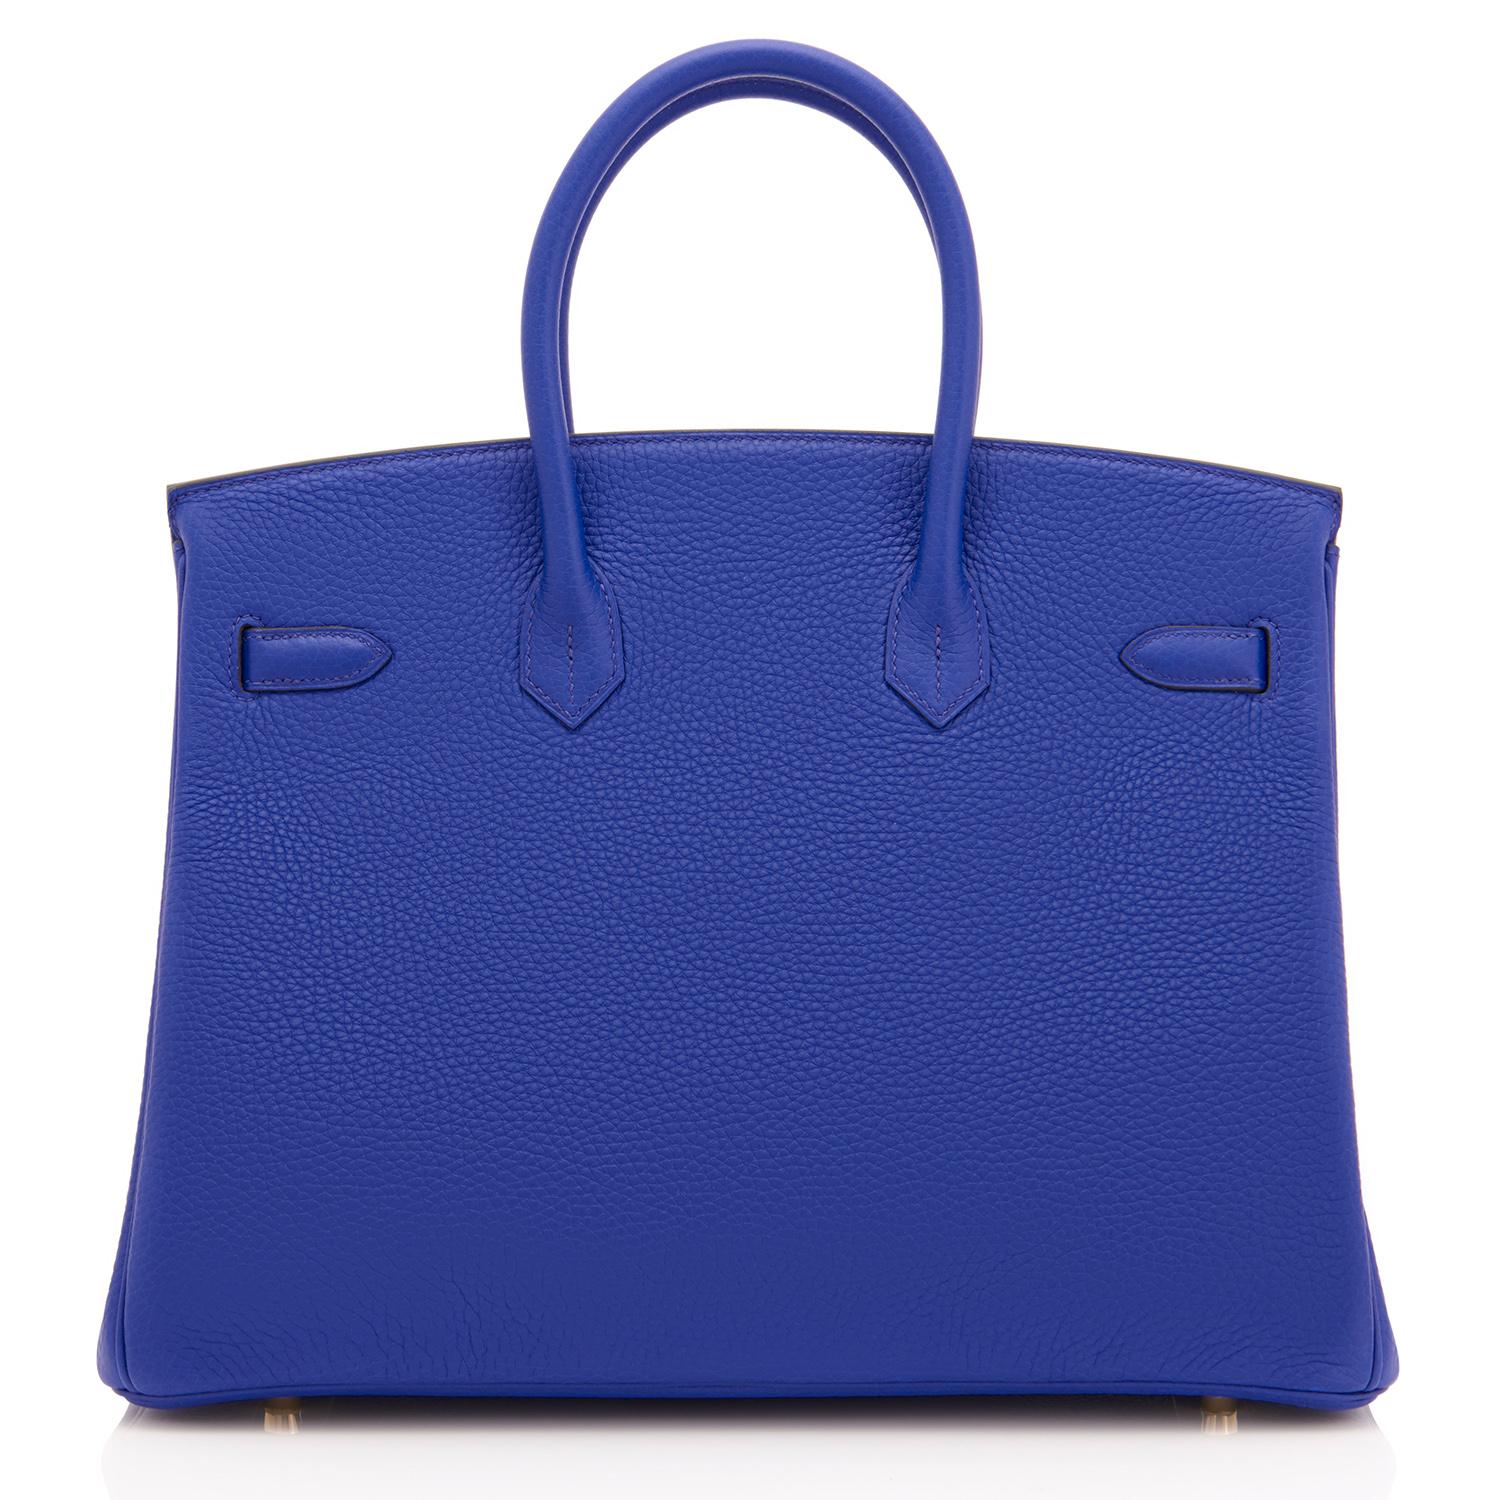 Hermes Birkin 35cm Blau Elektrisch Gold Hardware Tasche für Damen oder Herren